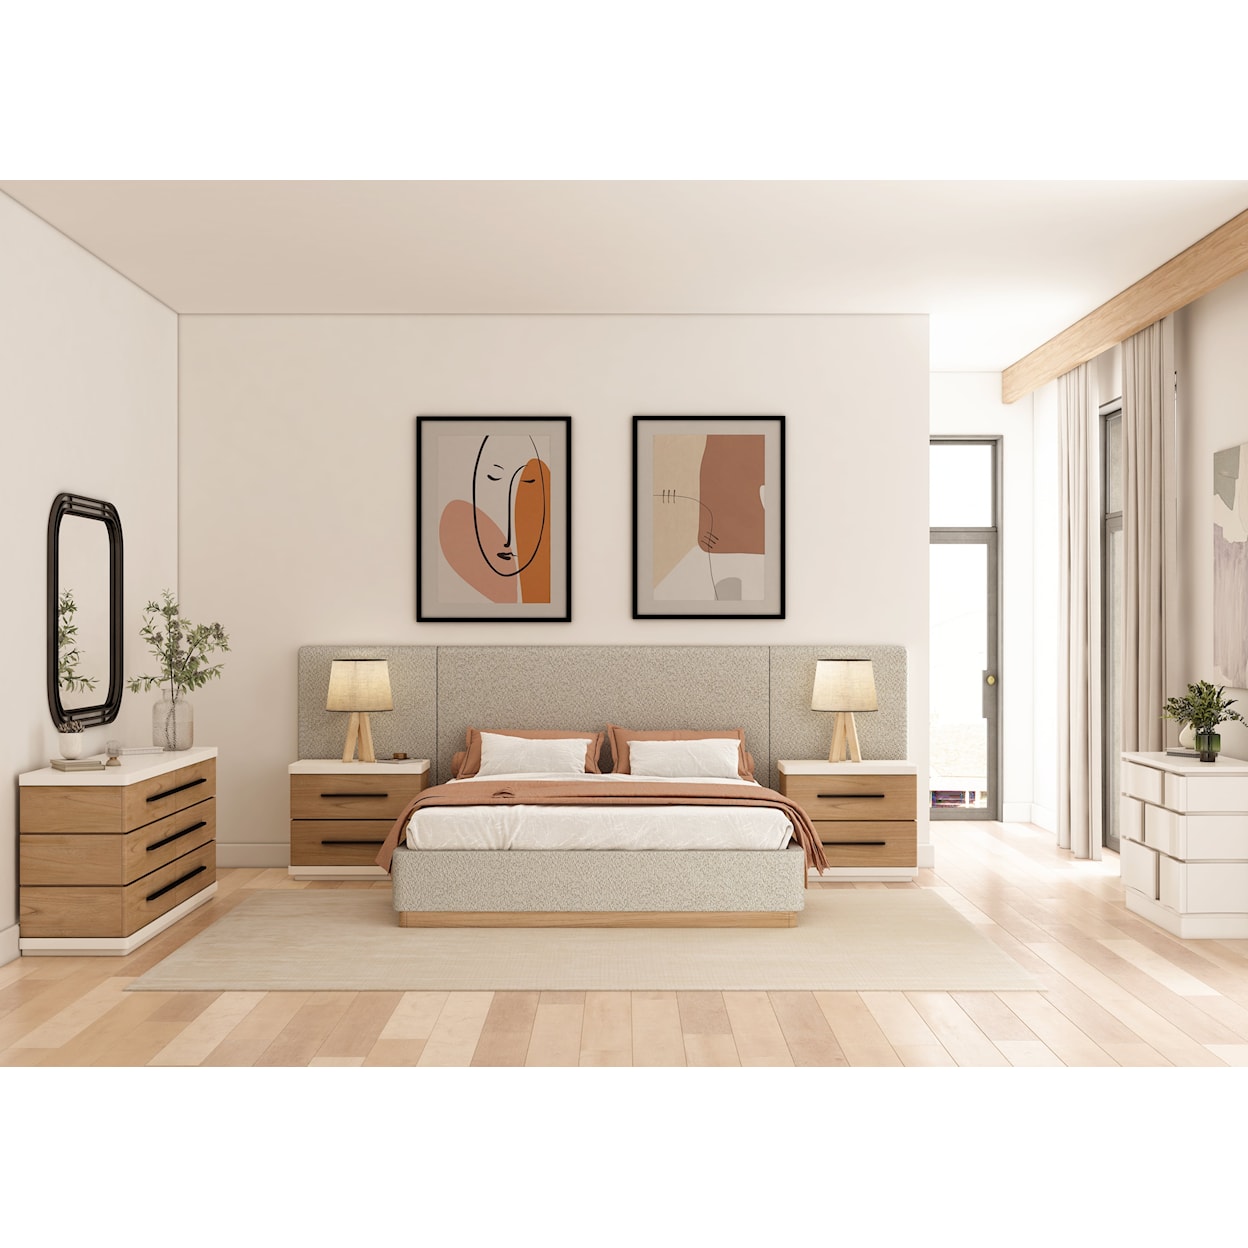 A.R.T. Furniture Inc Portico Queen Bedroom Set